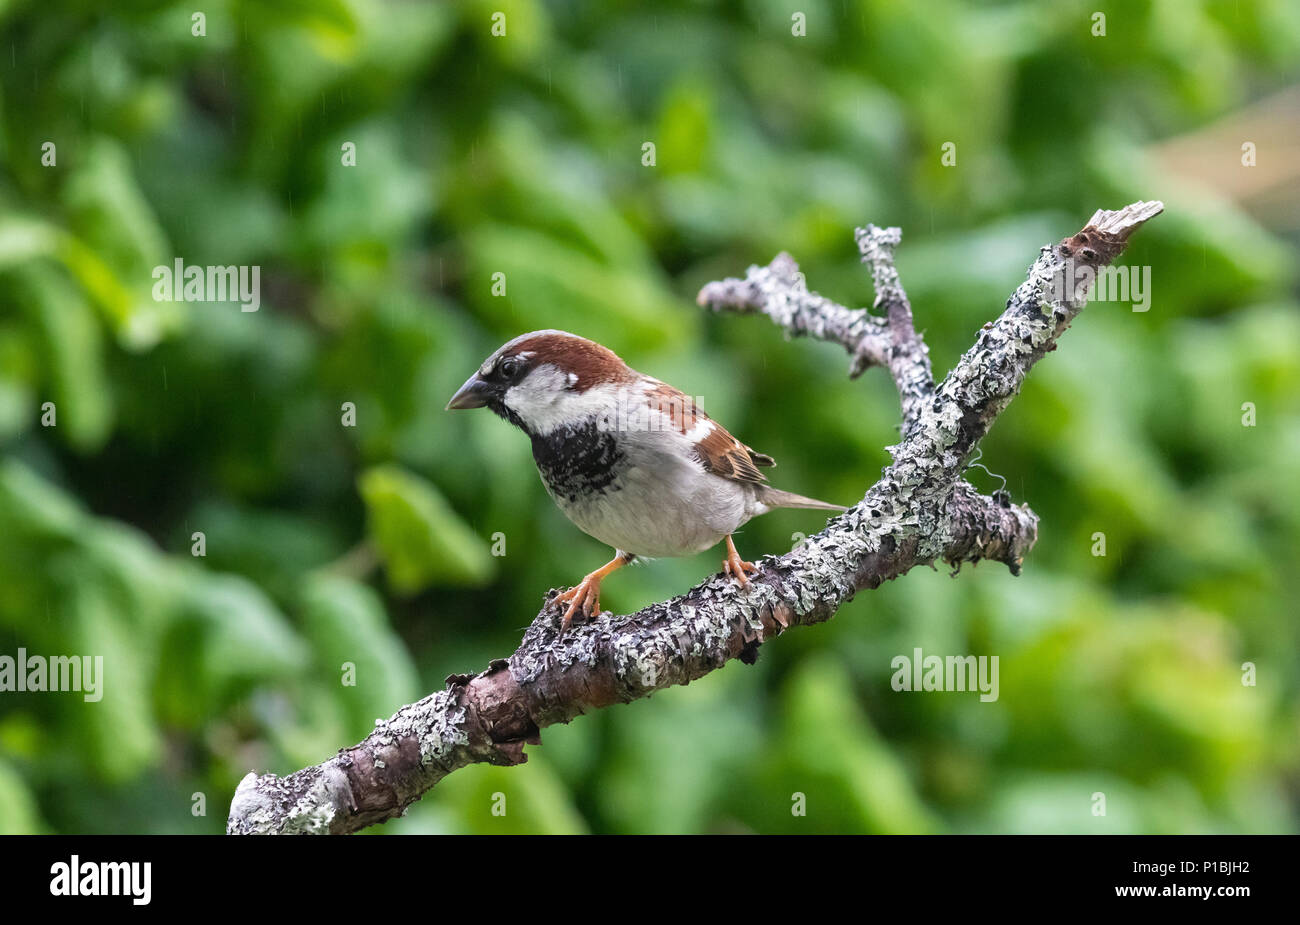 A house sparrow on a branch in a Fife garden. Stock Photo